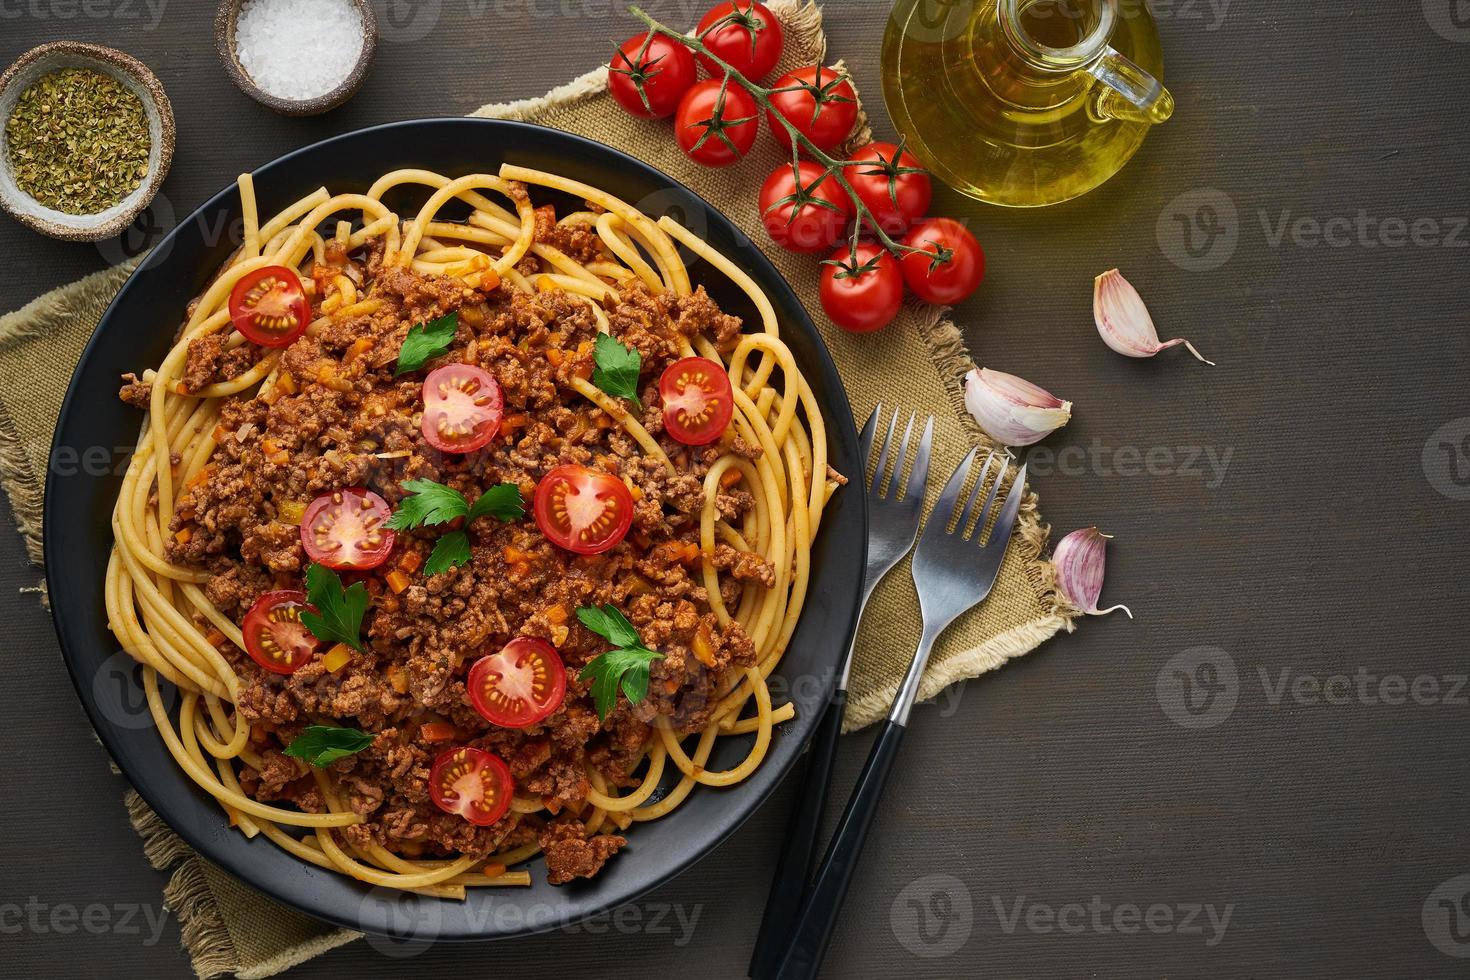 bucatini di pasta alla bolognese con carne macinata e pomodori, fondo in legno scuro, vista dall'alto, spazio per la copia foto